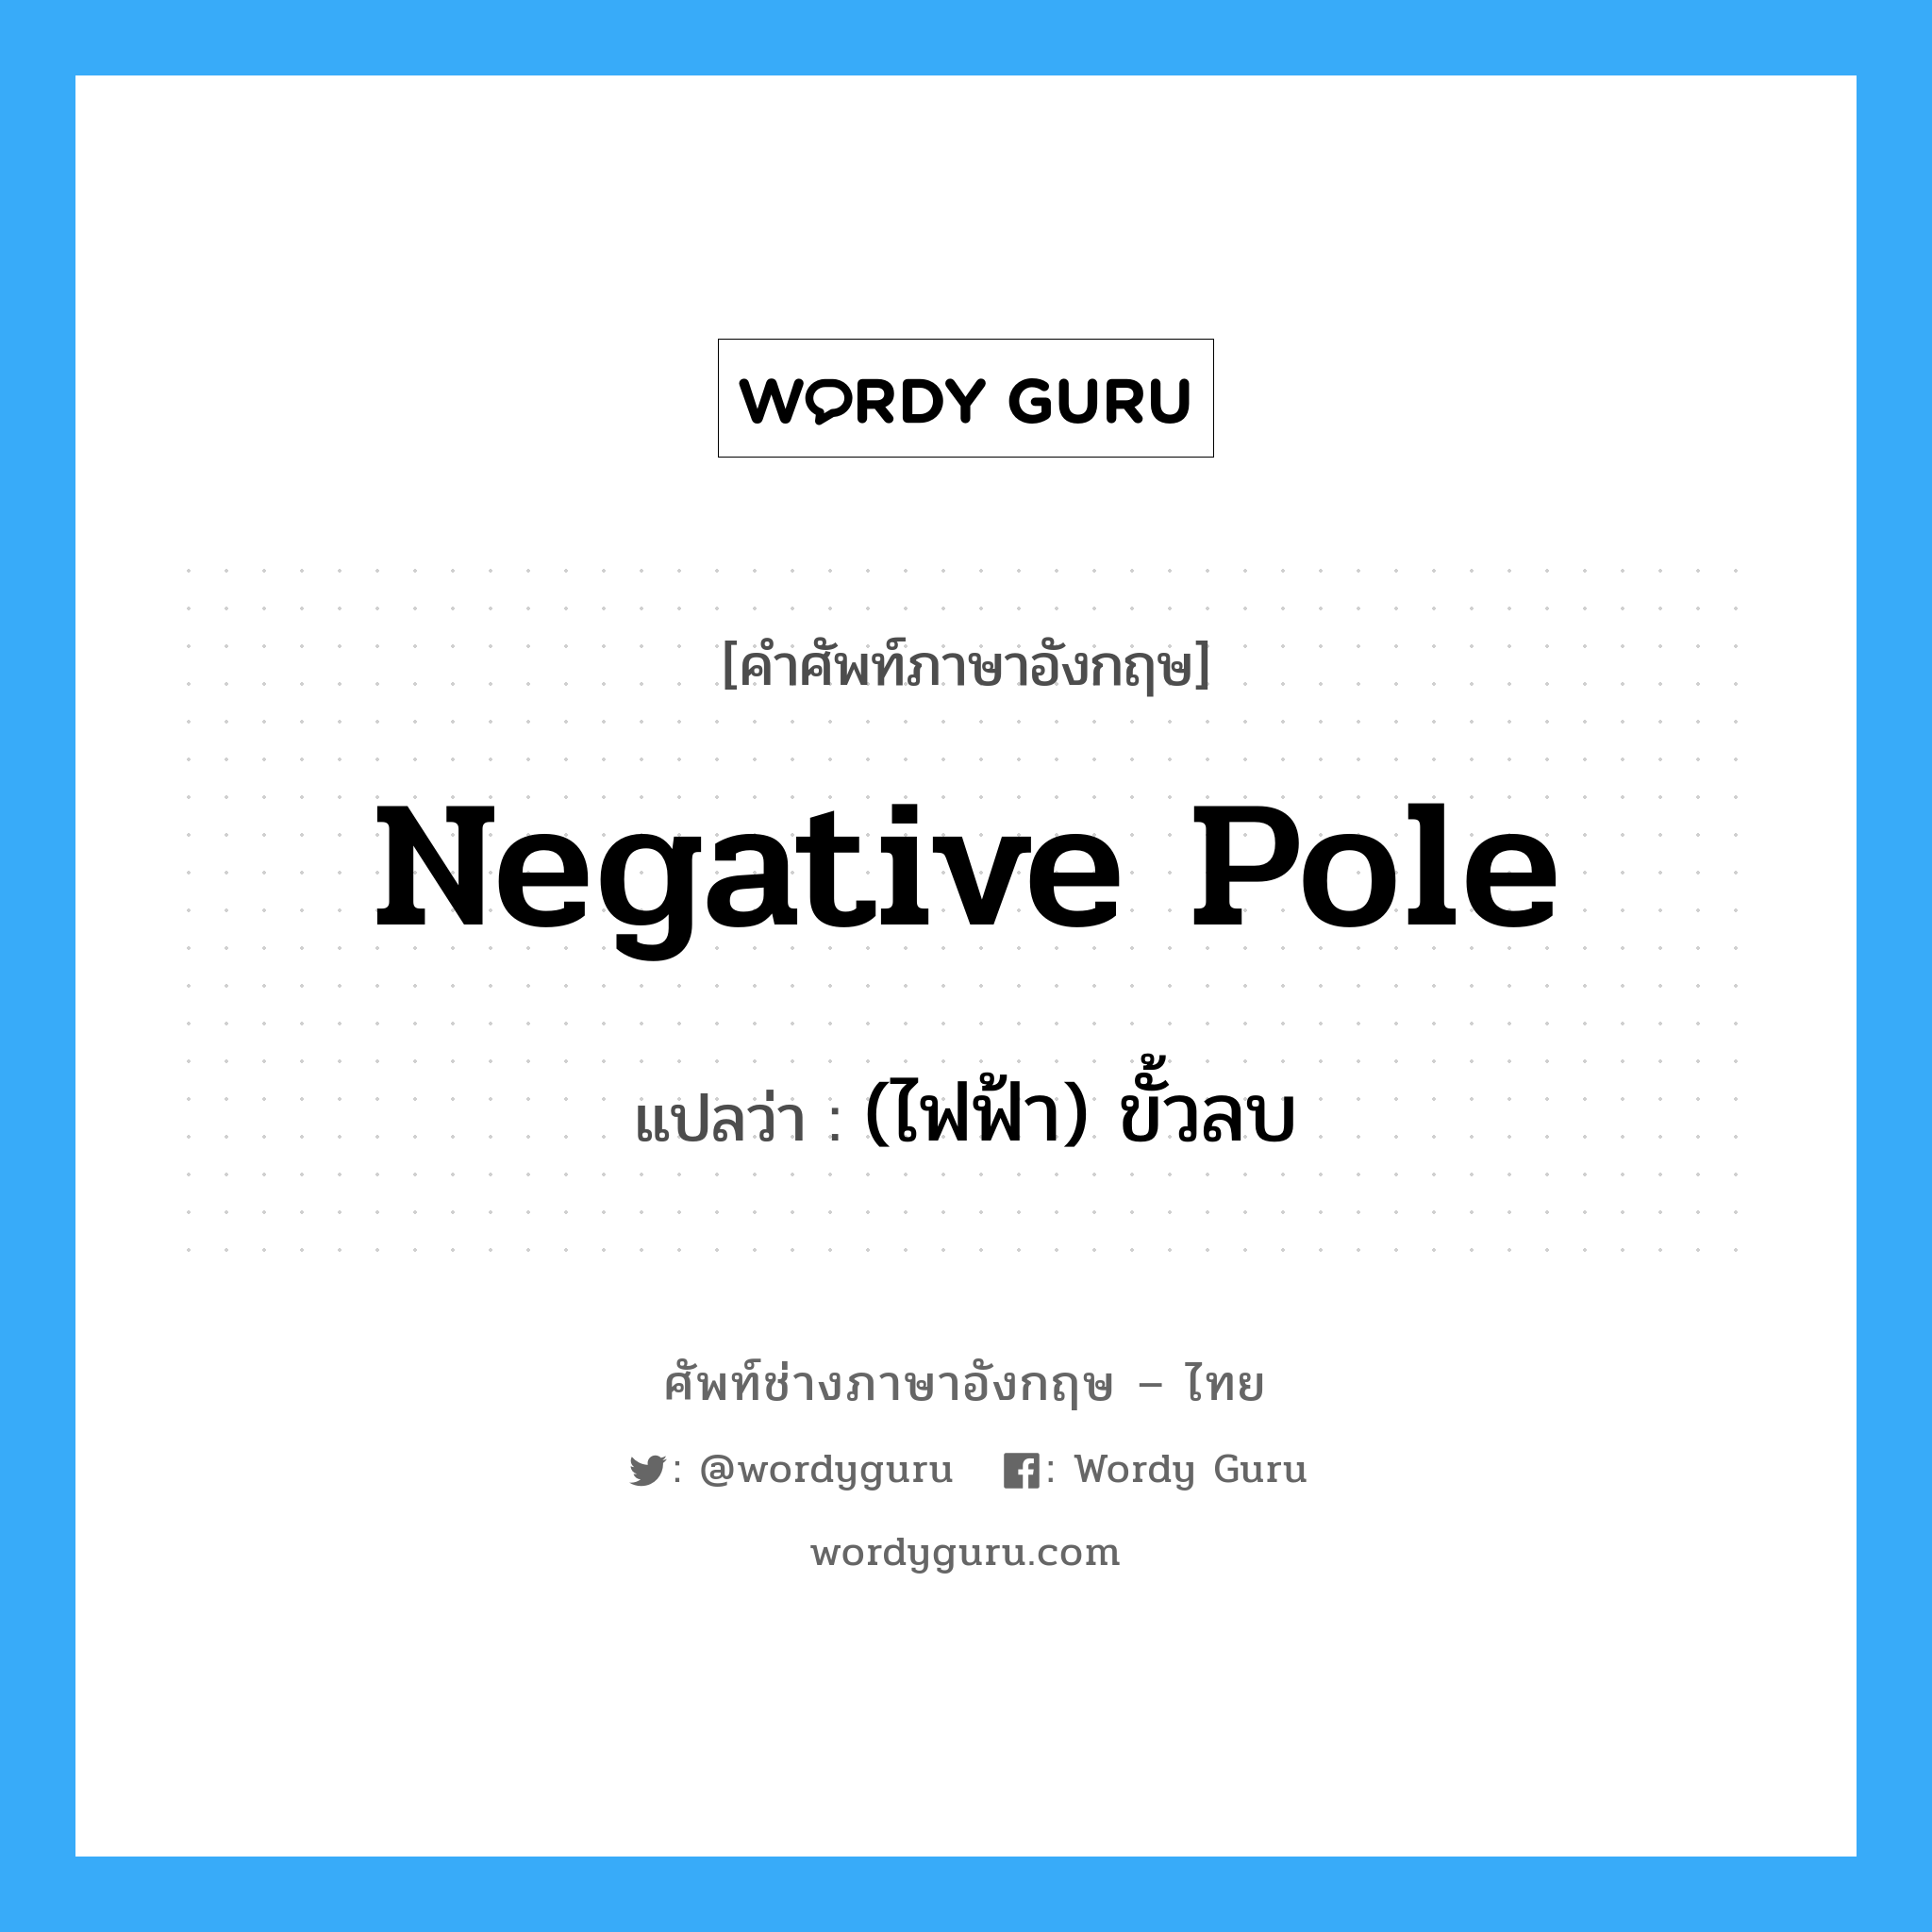 (ไฟฟ้า) ขั้วลบ ภาษาอังกฤษ?, คำศัพท์ช่างภาษาอังกฤษ - ไทย (ไฟฟ้า) ขั้วลบ คำศัพท์ภาษาอังกฤษ (ไฟฟ้า) ขั้วลบ แปลว่า negative pole